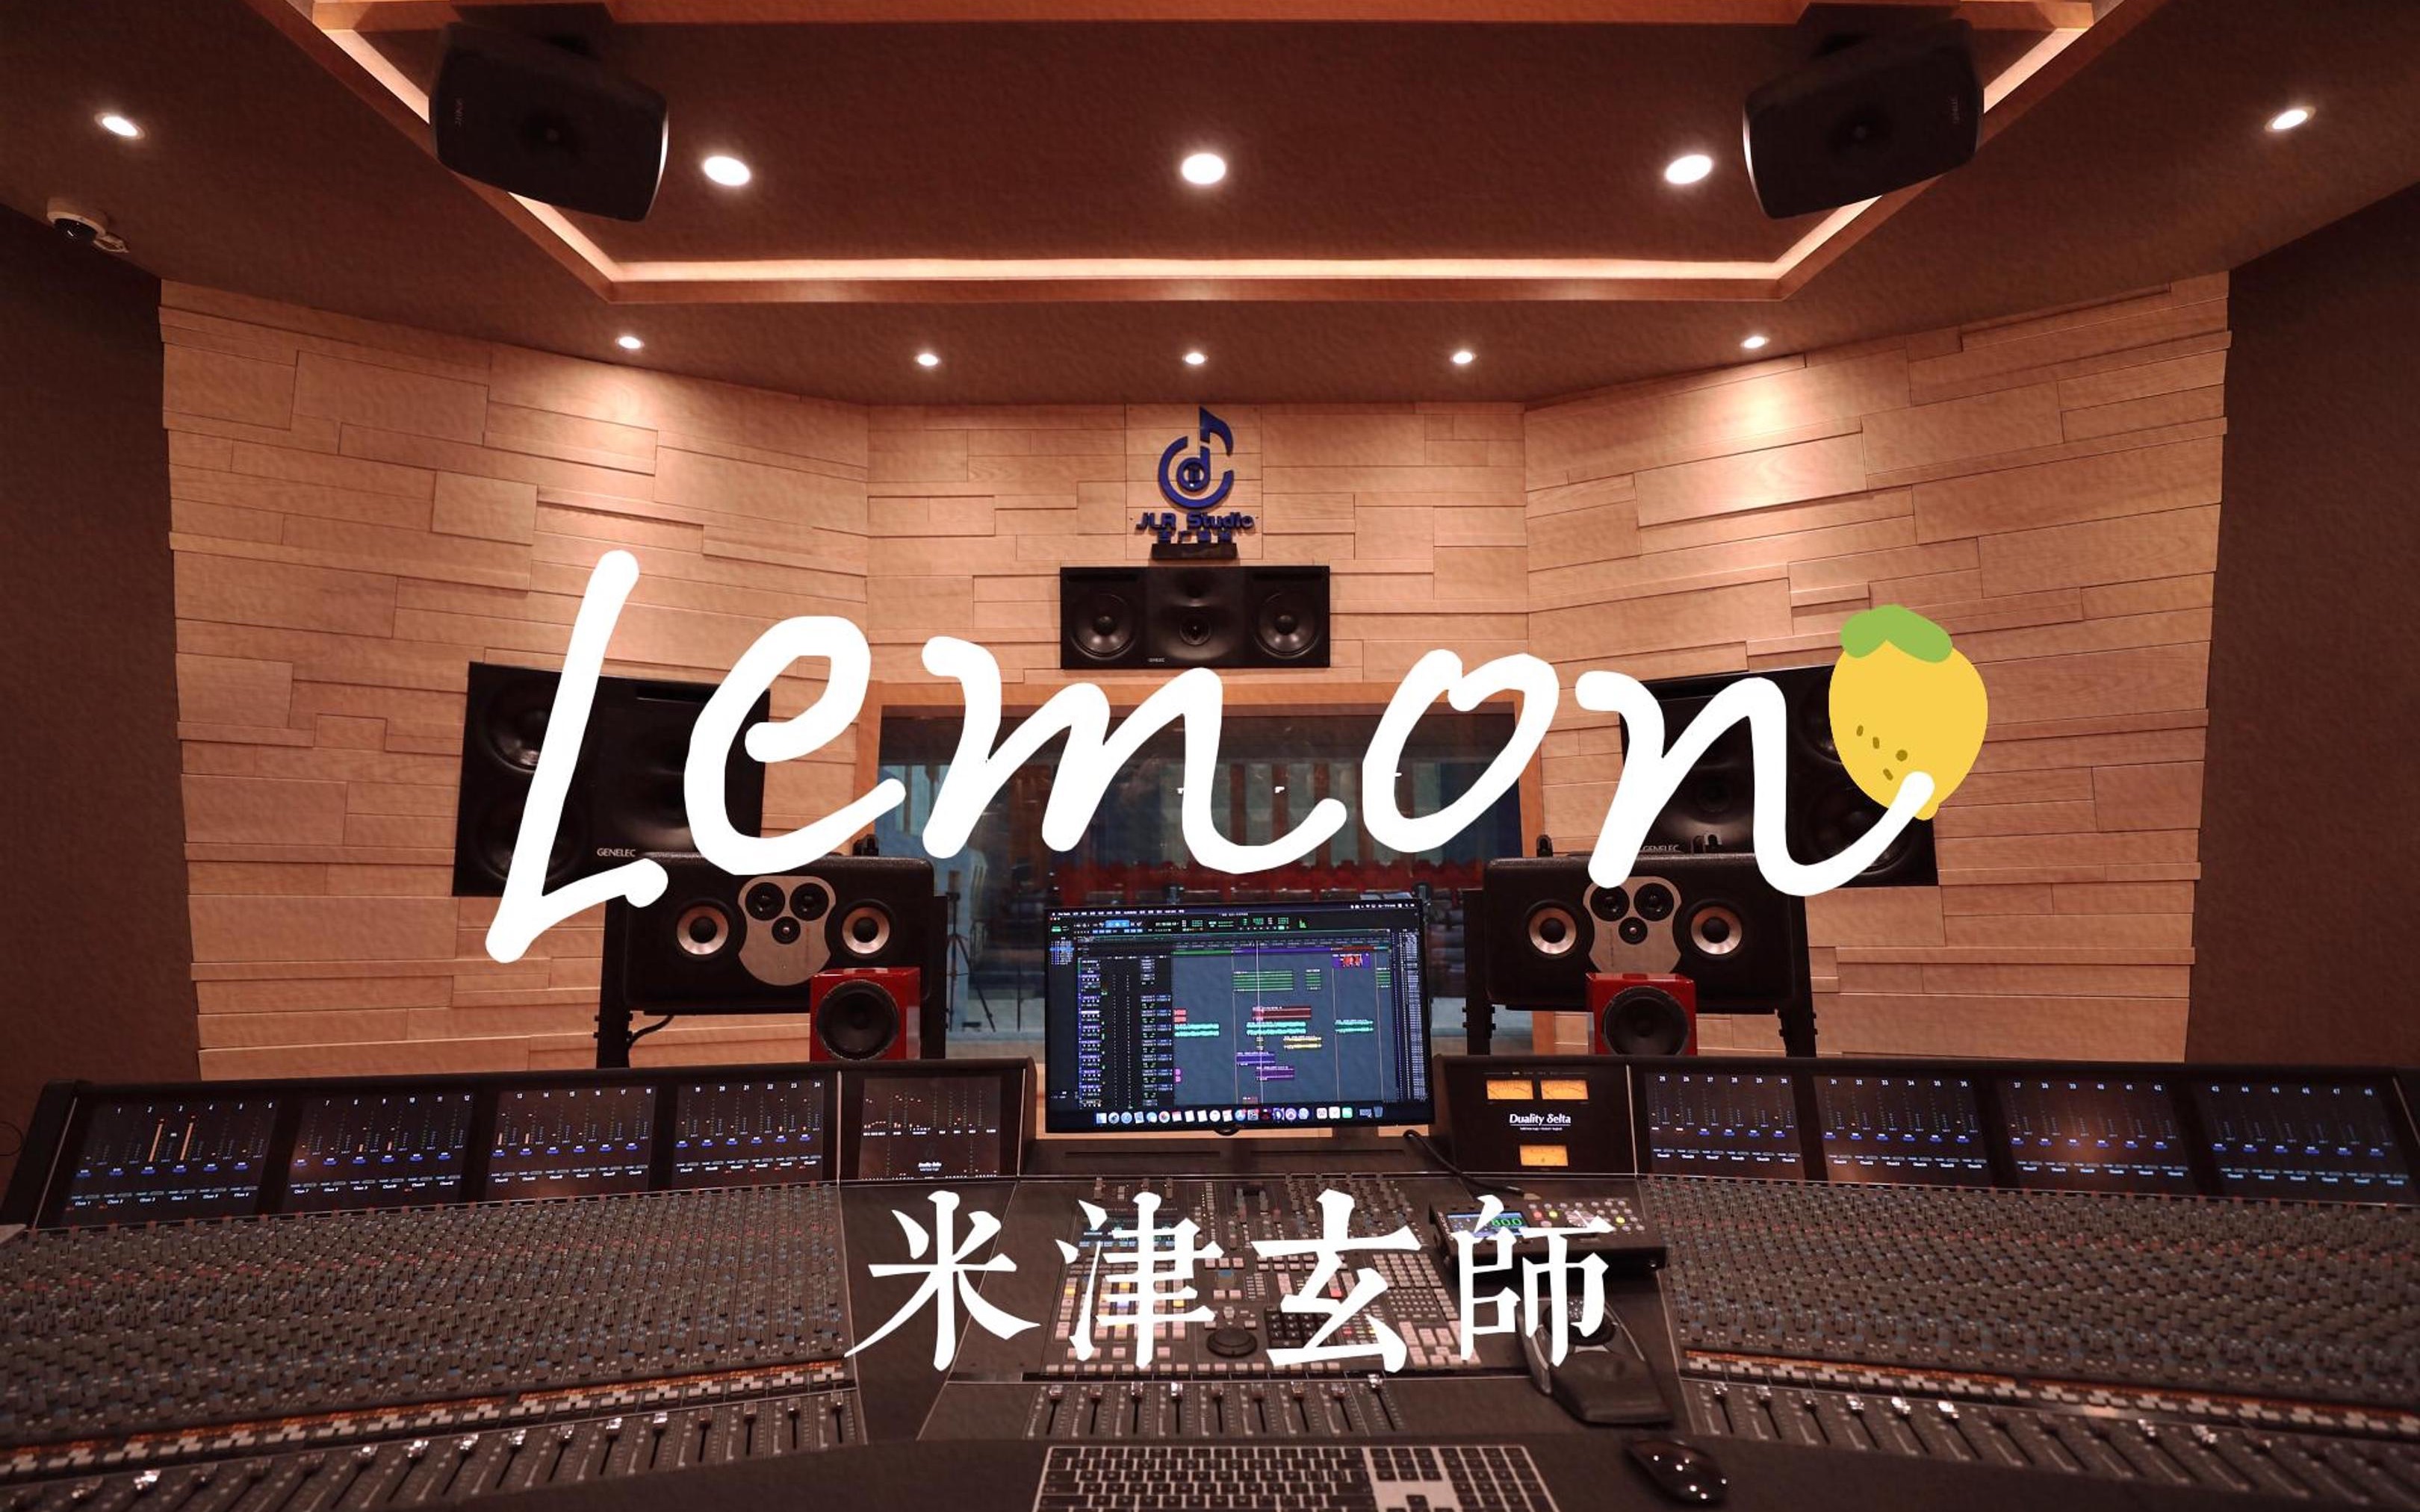 在百万豪装录音棚大声听米津玄师《Lemon》【Hi-res】